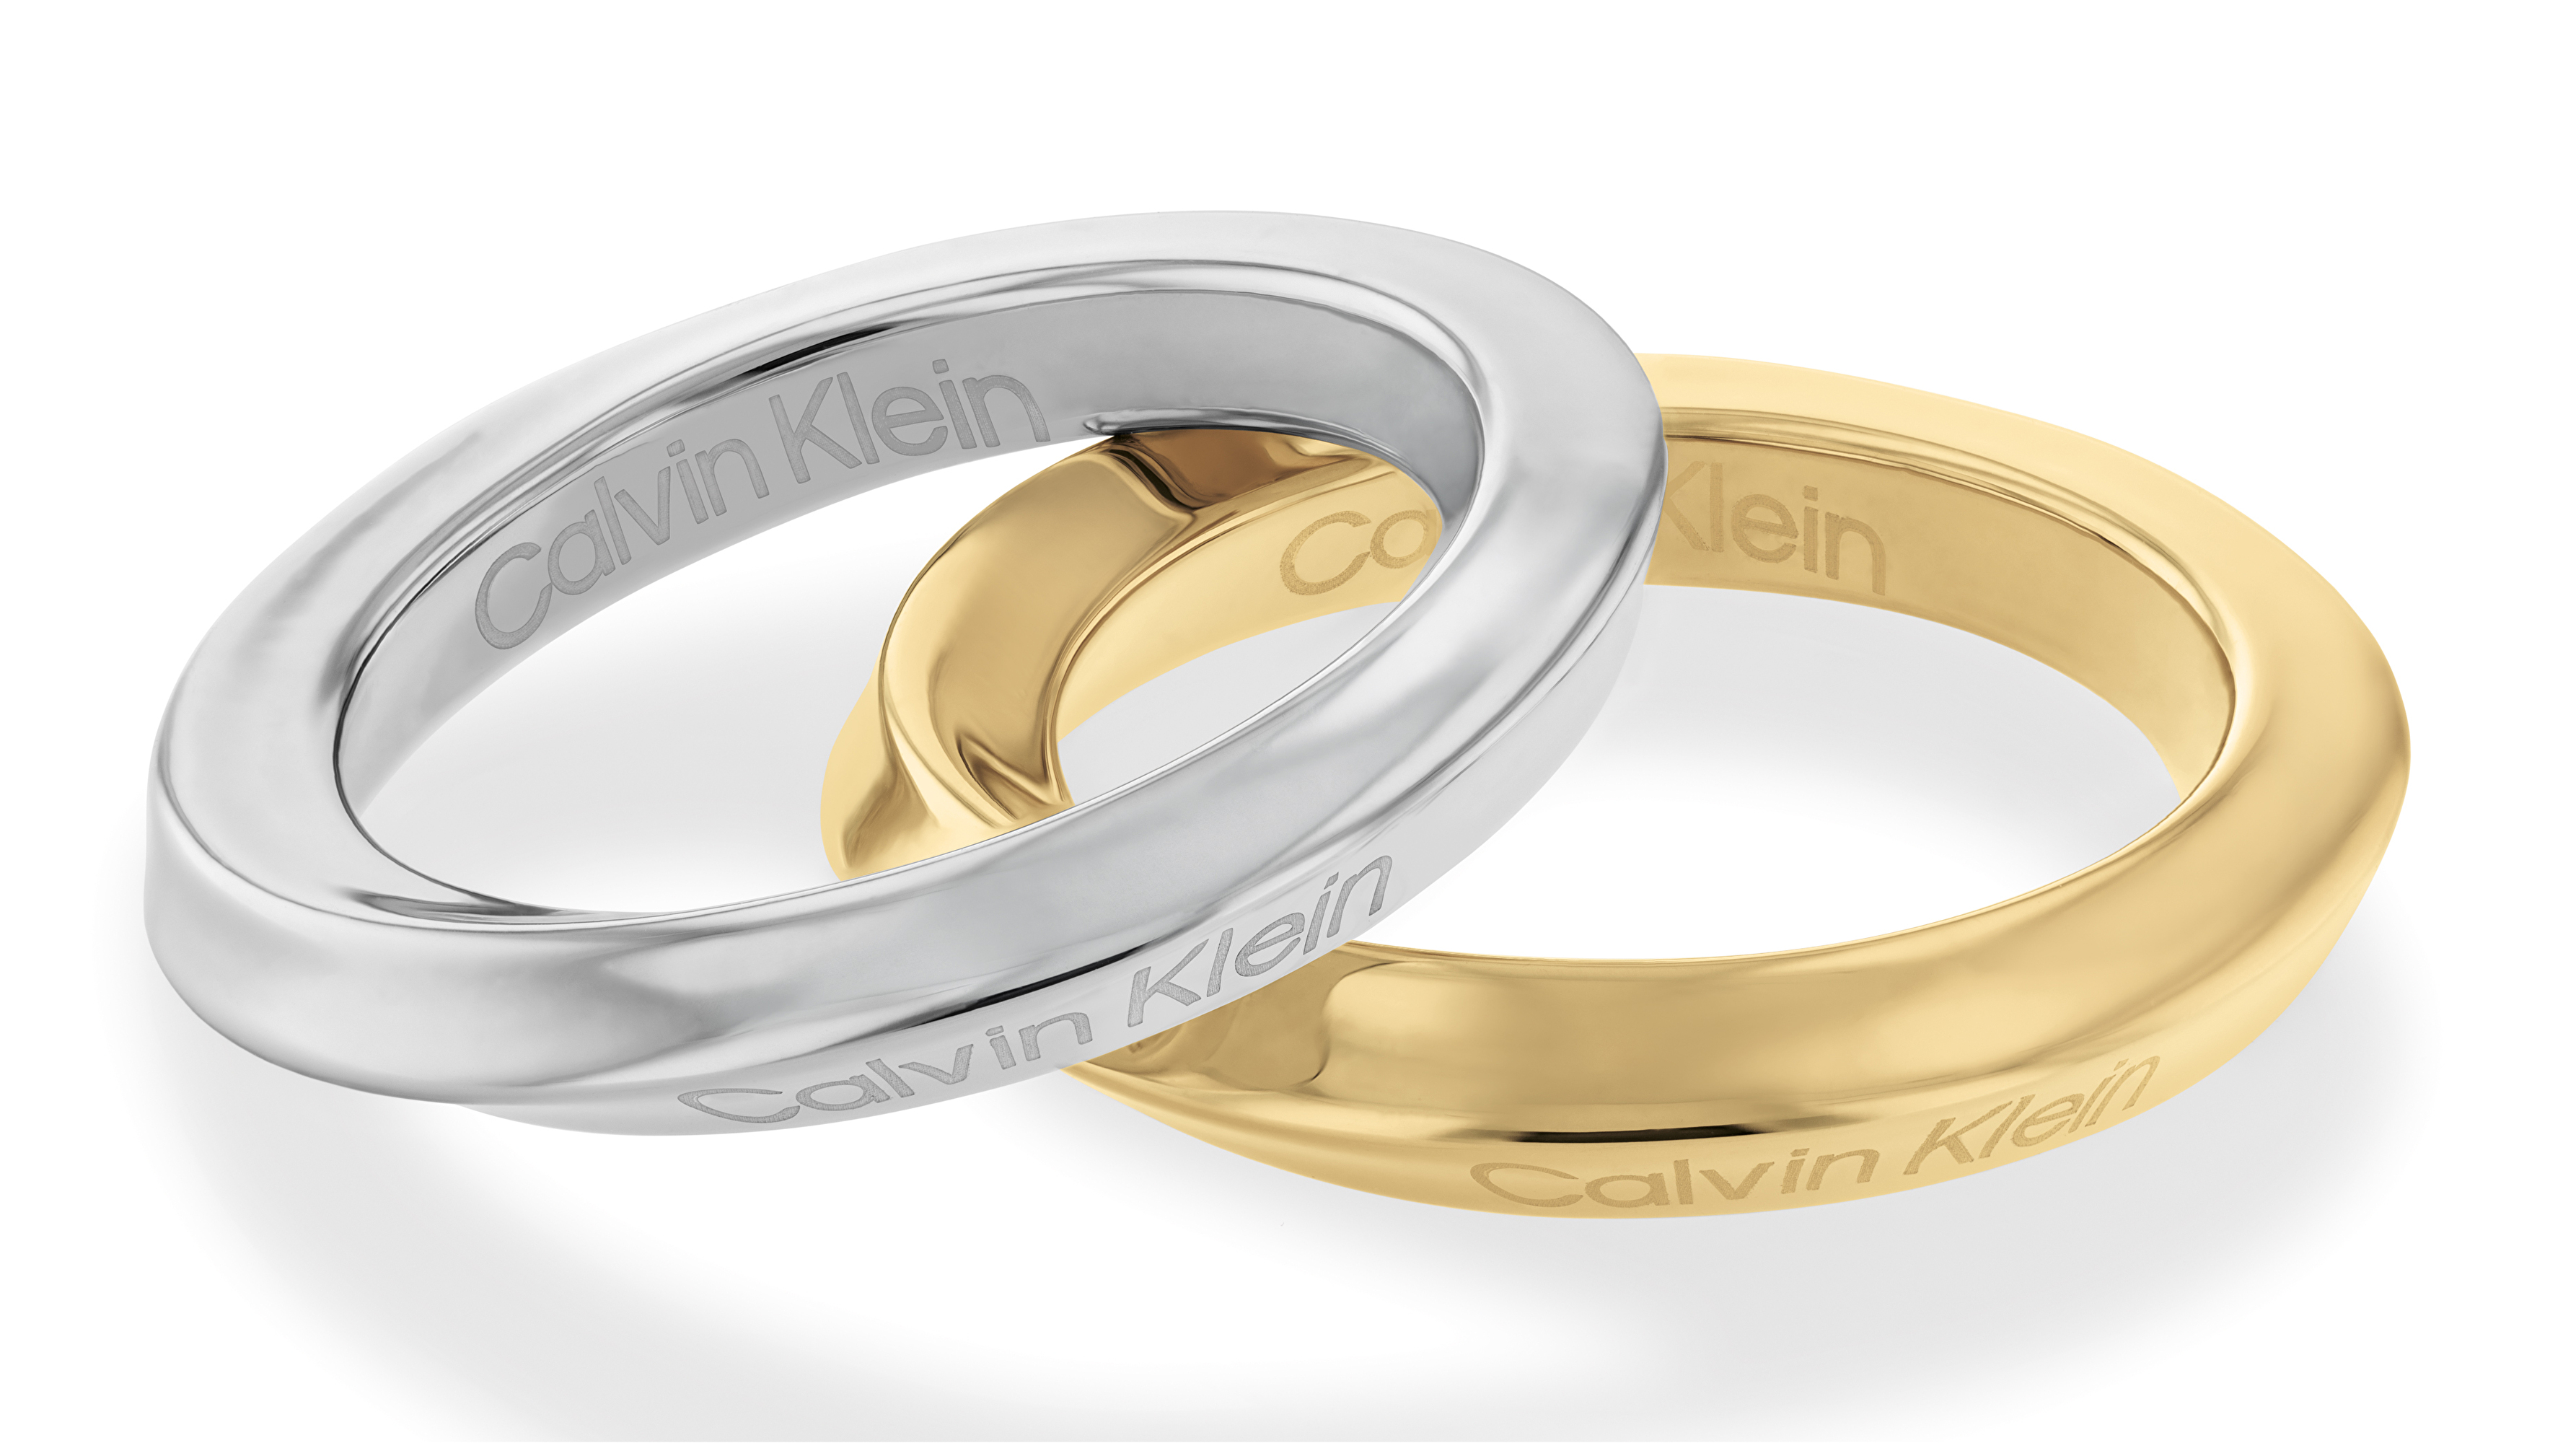 Calvin Klein Elegantní souprava ocelových prstenů Sculptural 35000330 52 mm